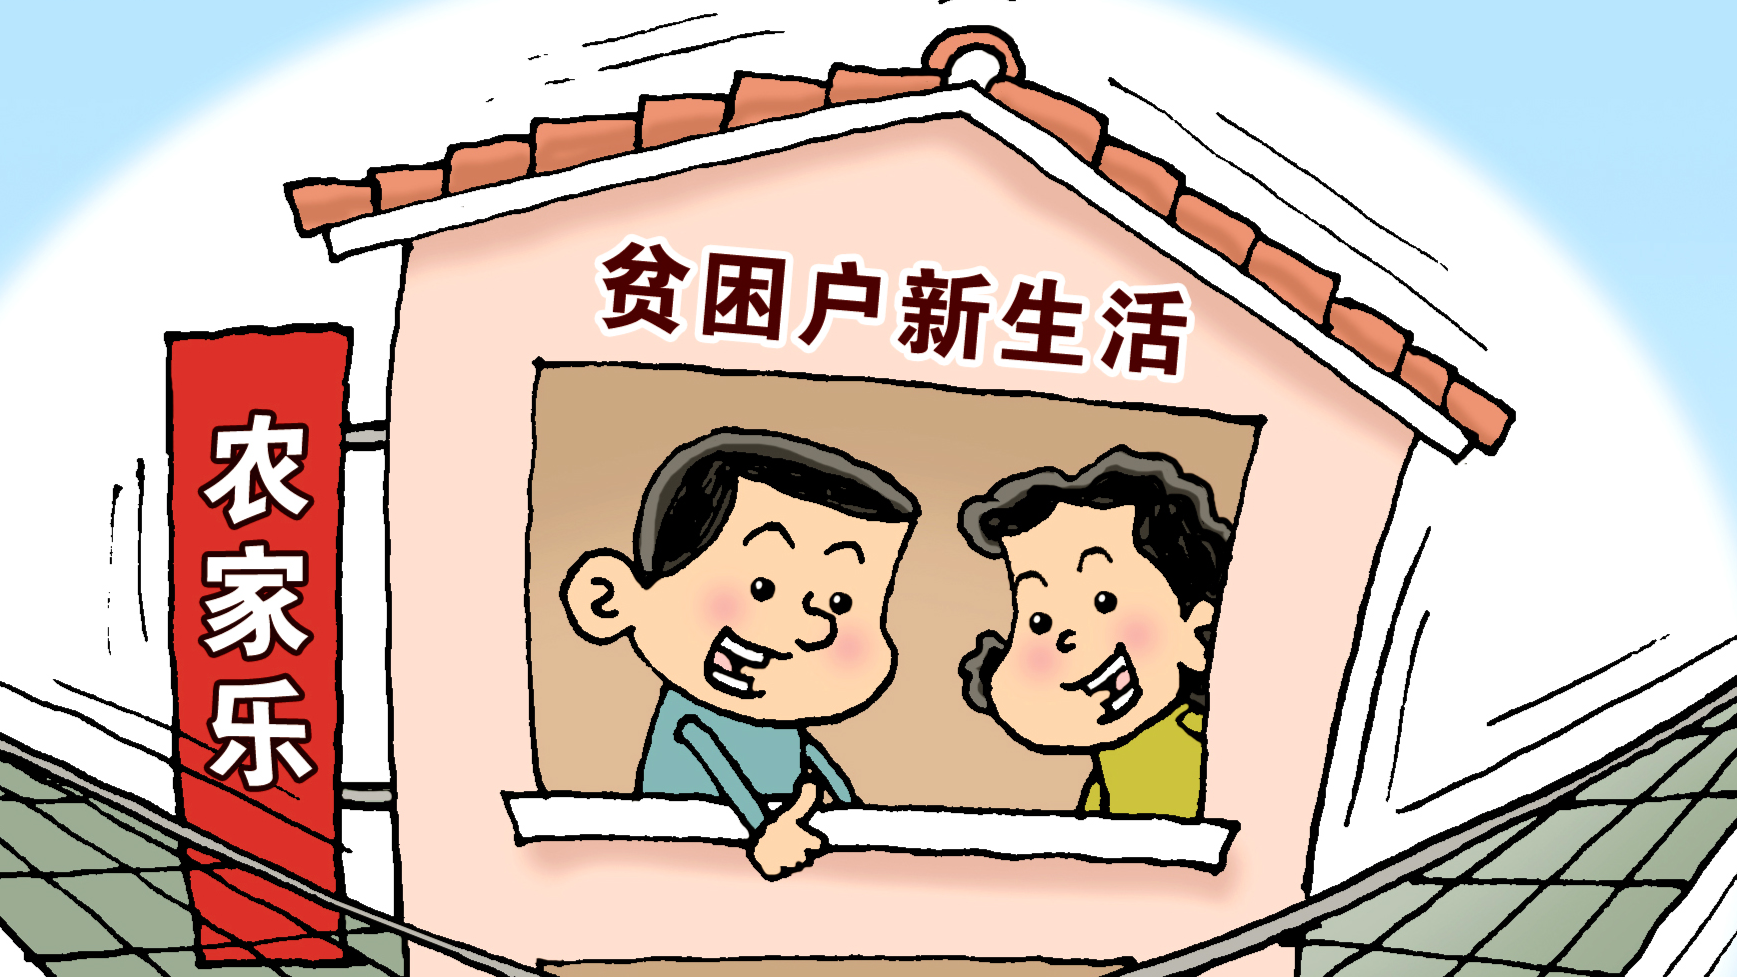 从四处透风到搬进新楼房,北京助卓资县2225个贫困户脱贫